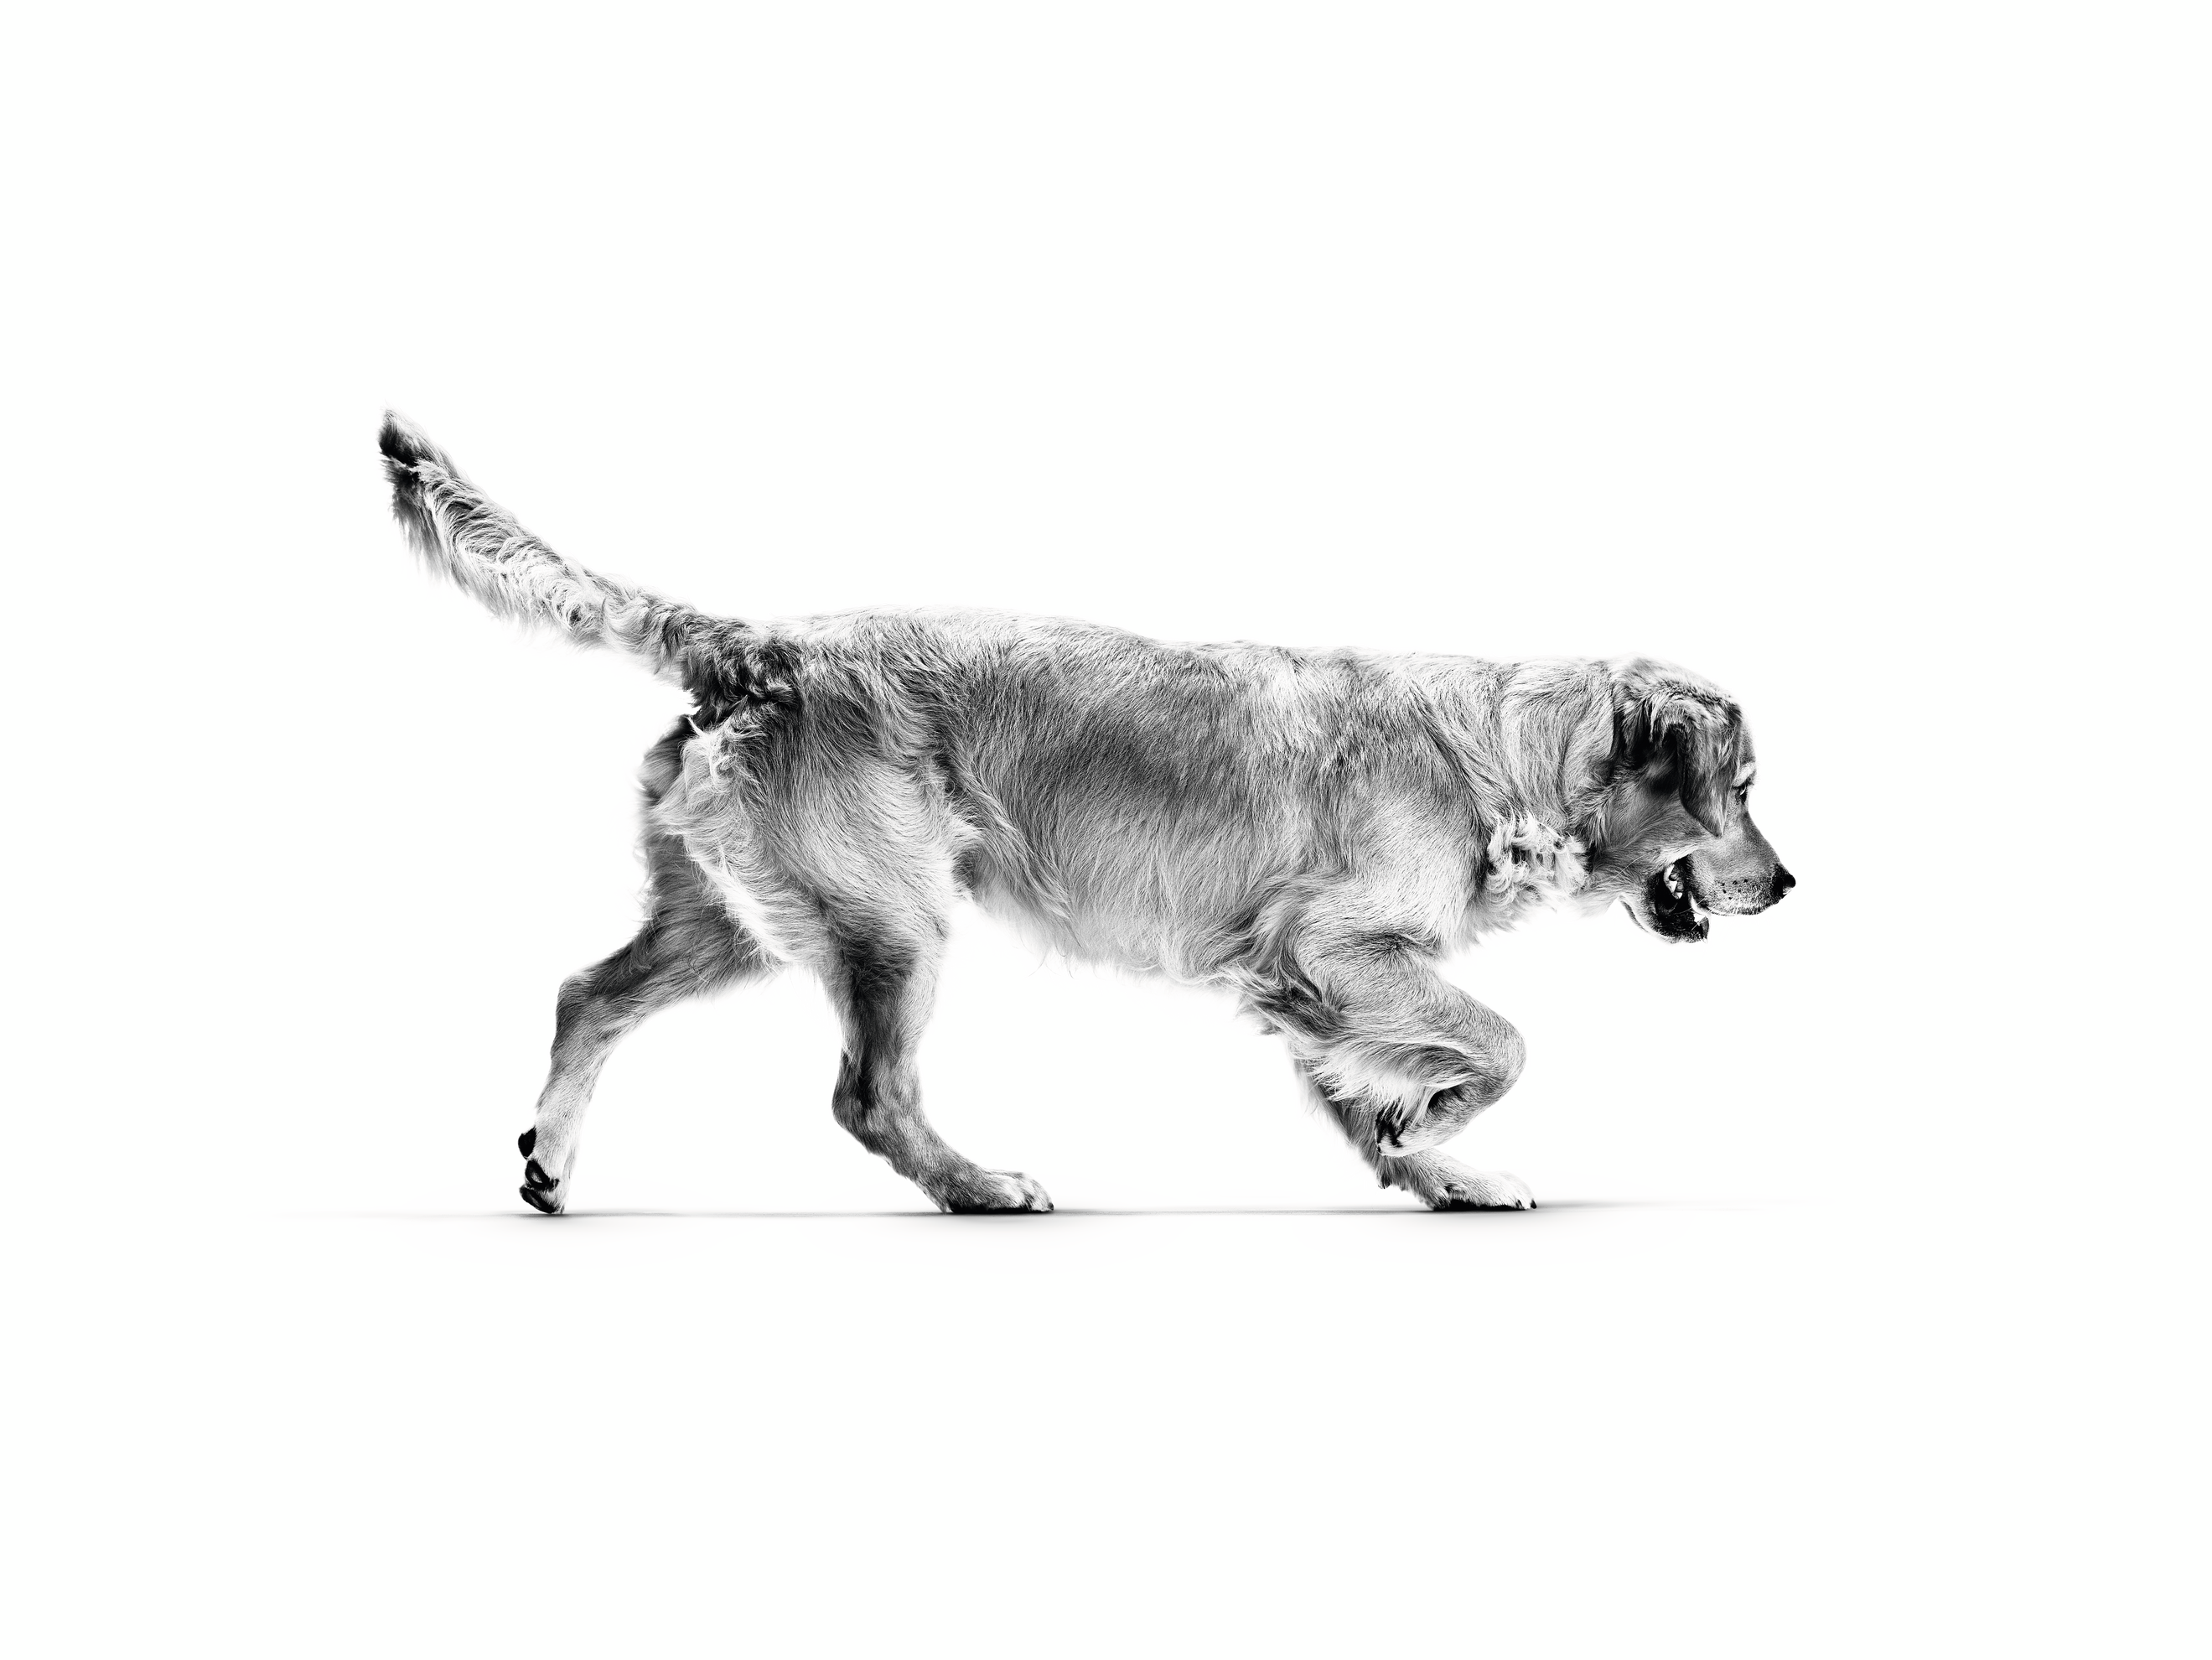 Czarno- biała ilustracja przedstawiająca biegające dorosłe psy rasy golden retriever na białym tle